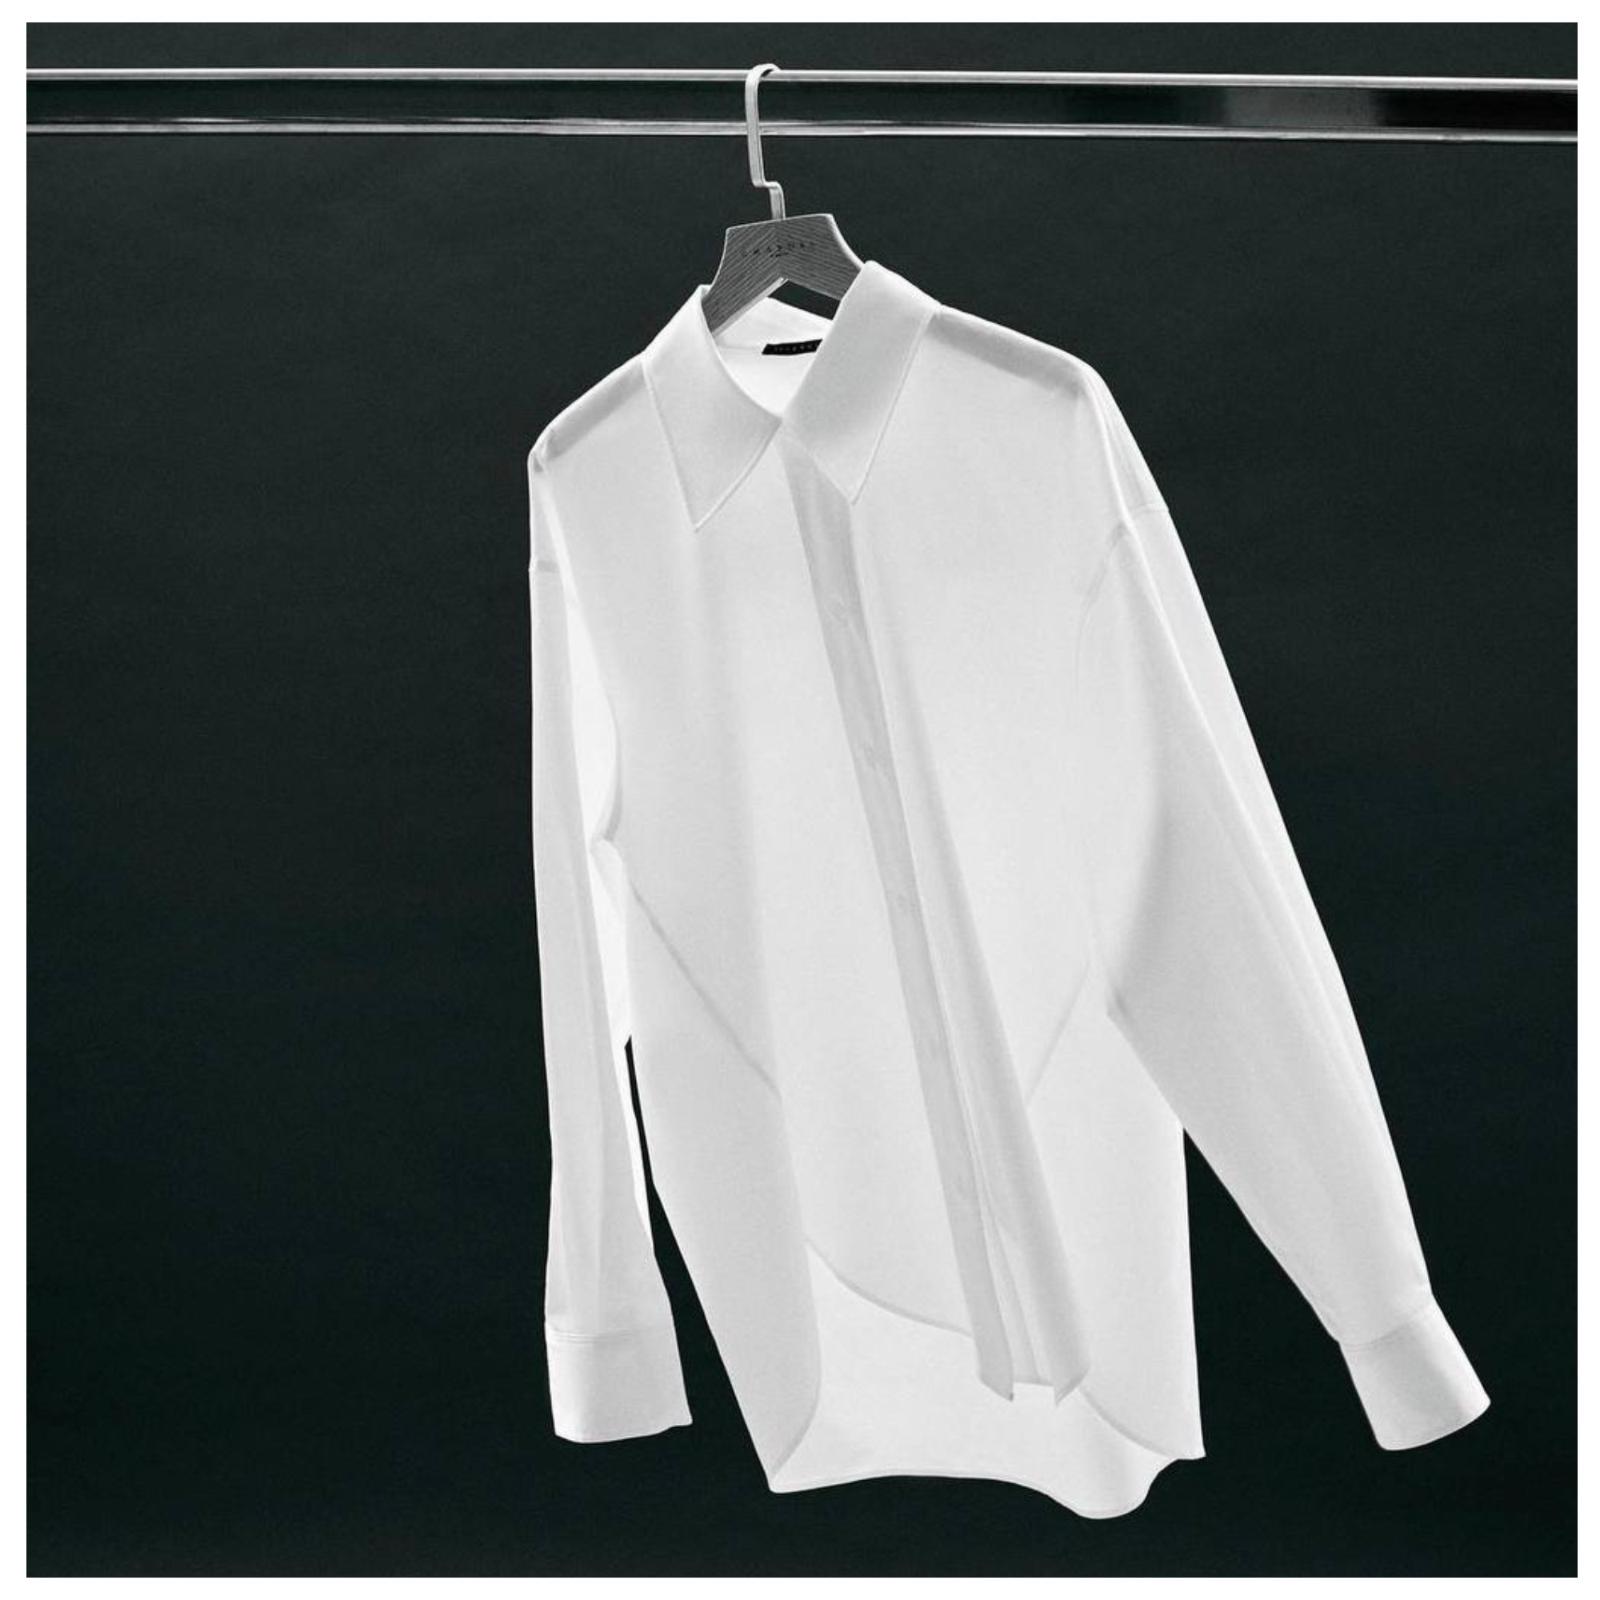 Белая рубашка — основа всего! Ищем идеальный фасон среди российских брендов